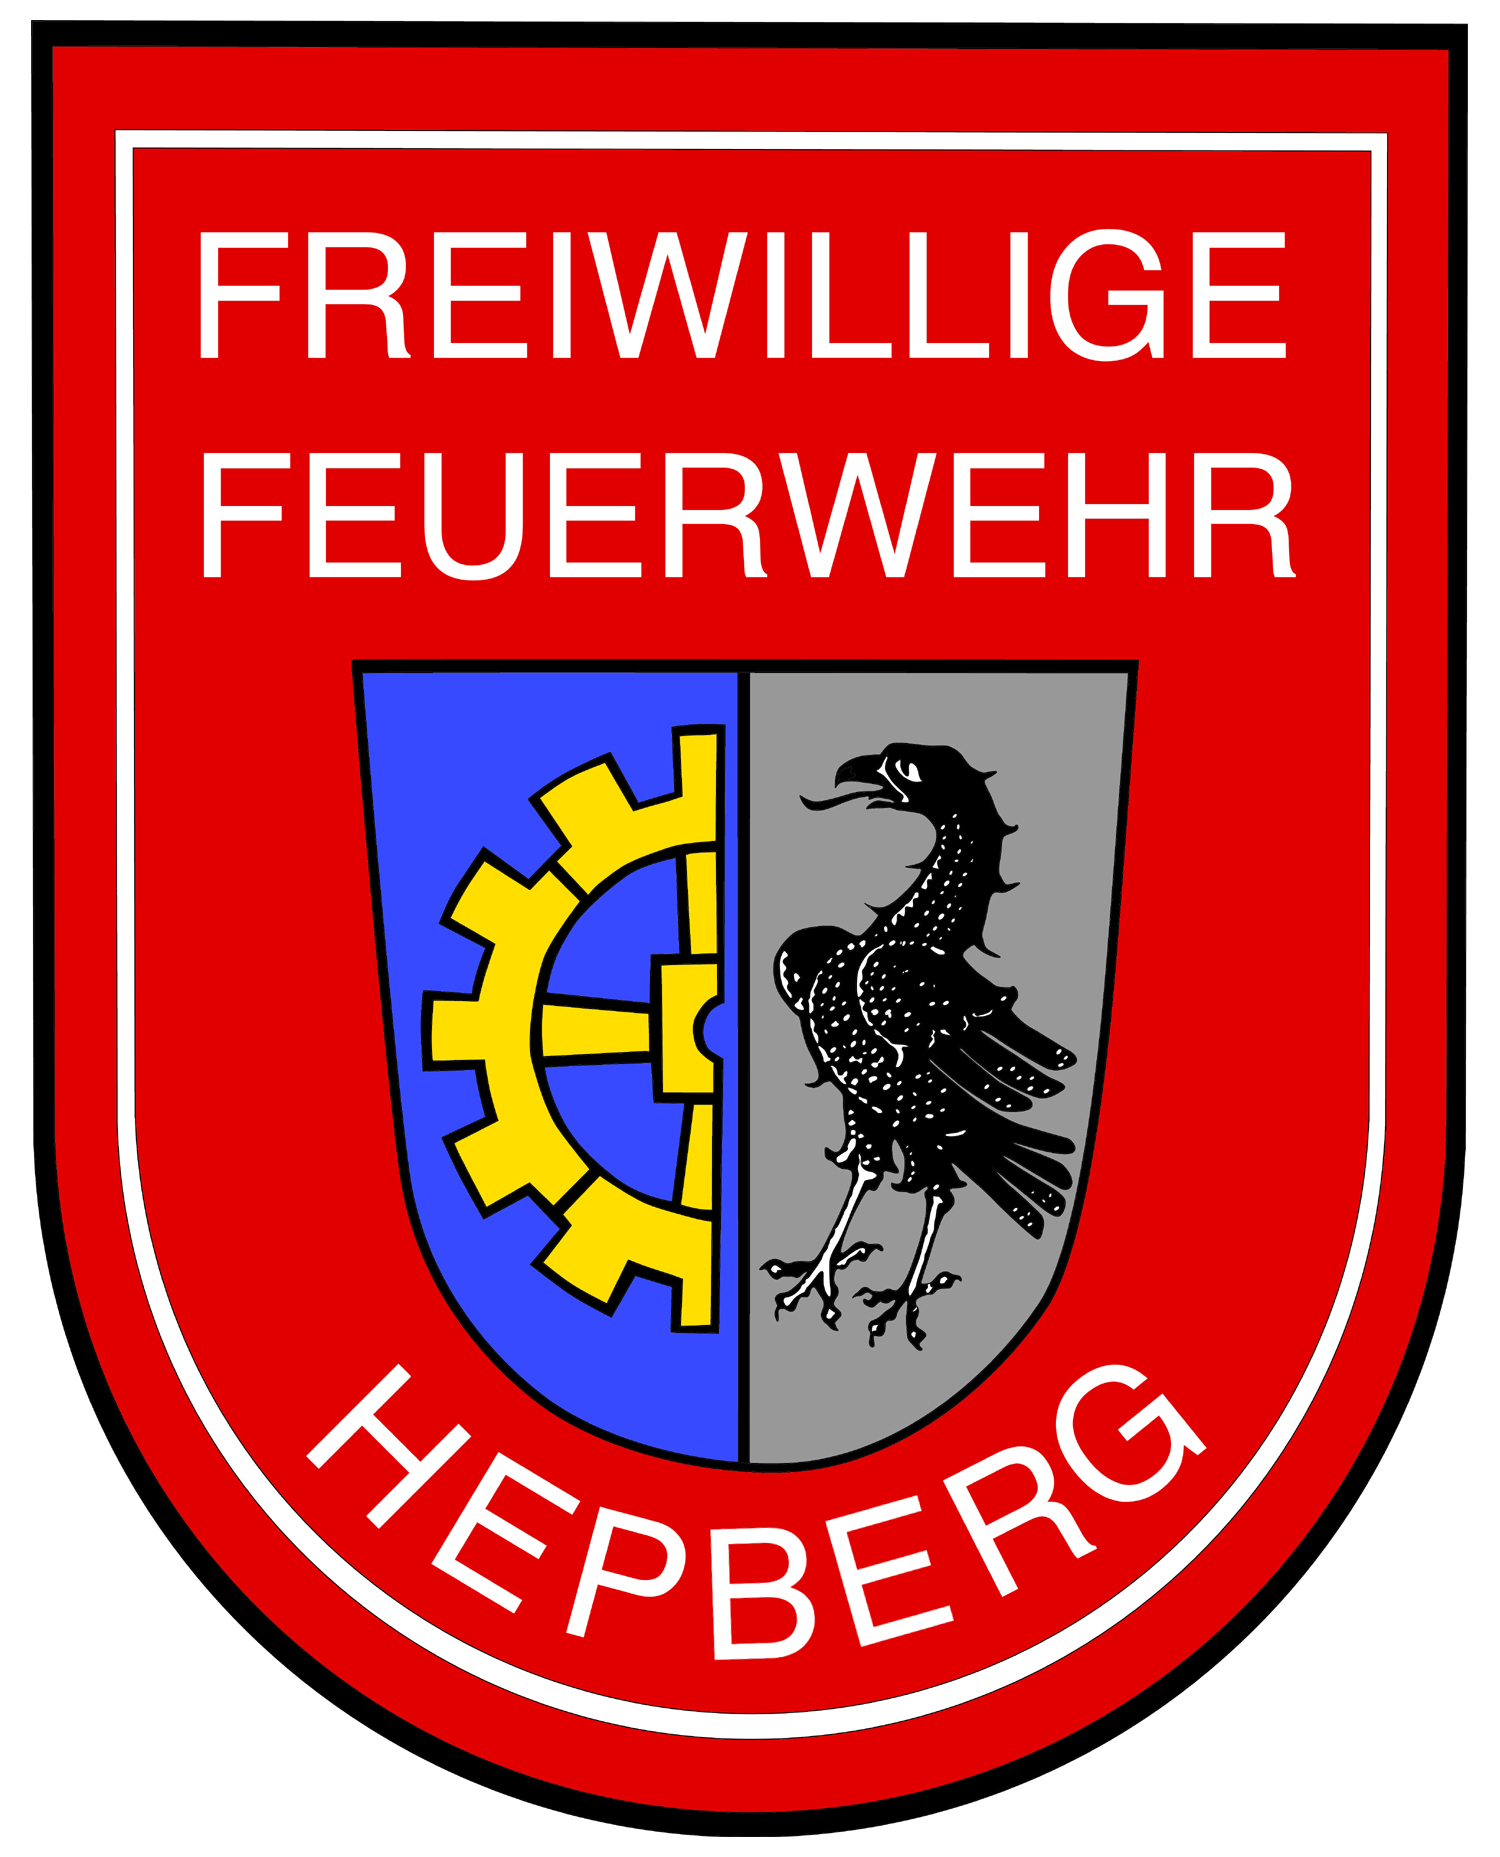 Feuerwehr Hepberg